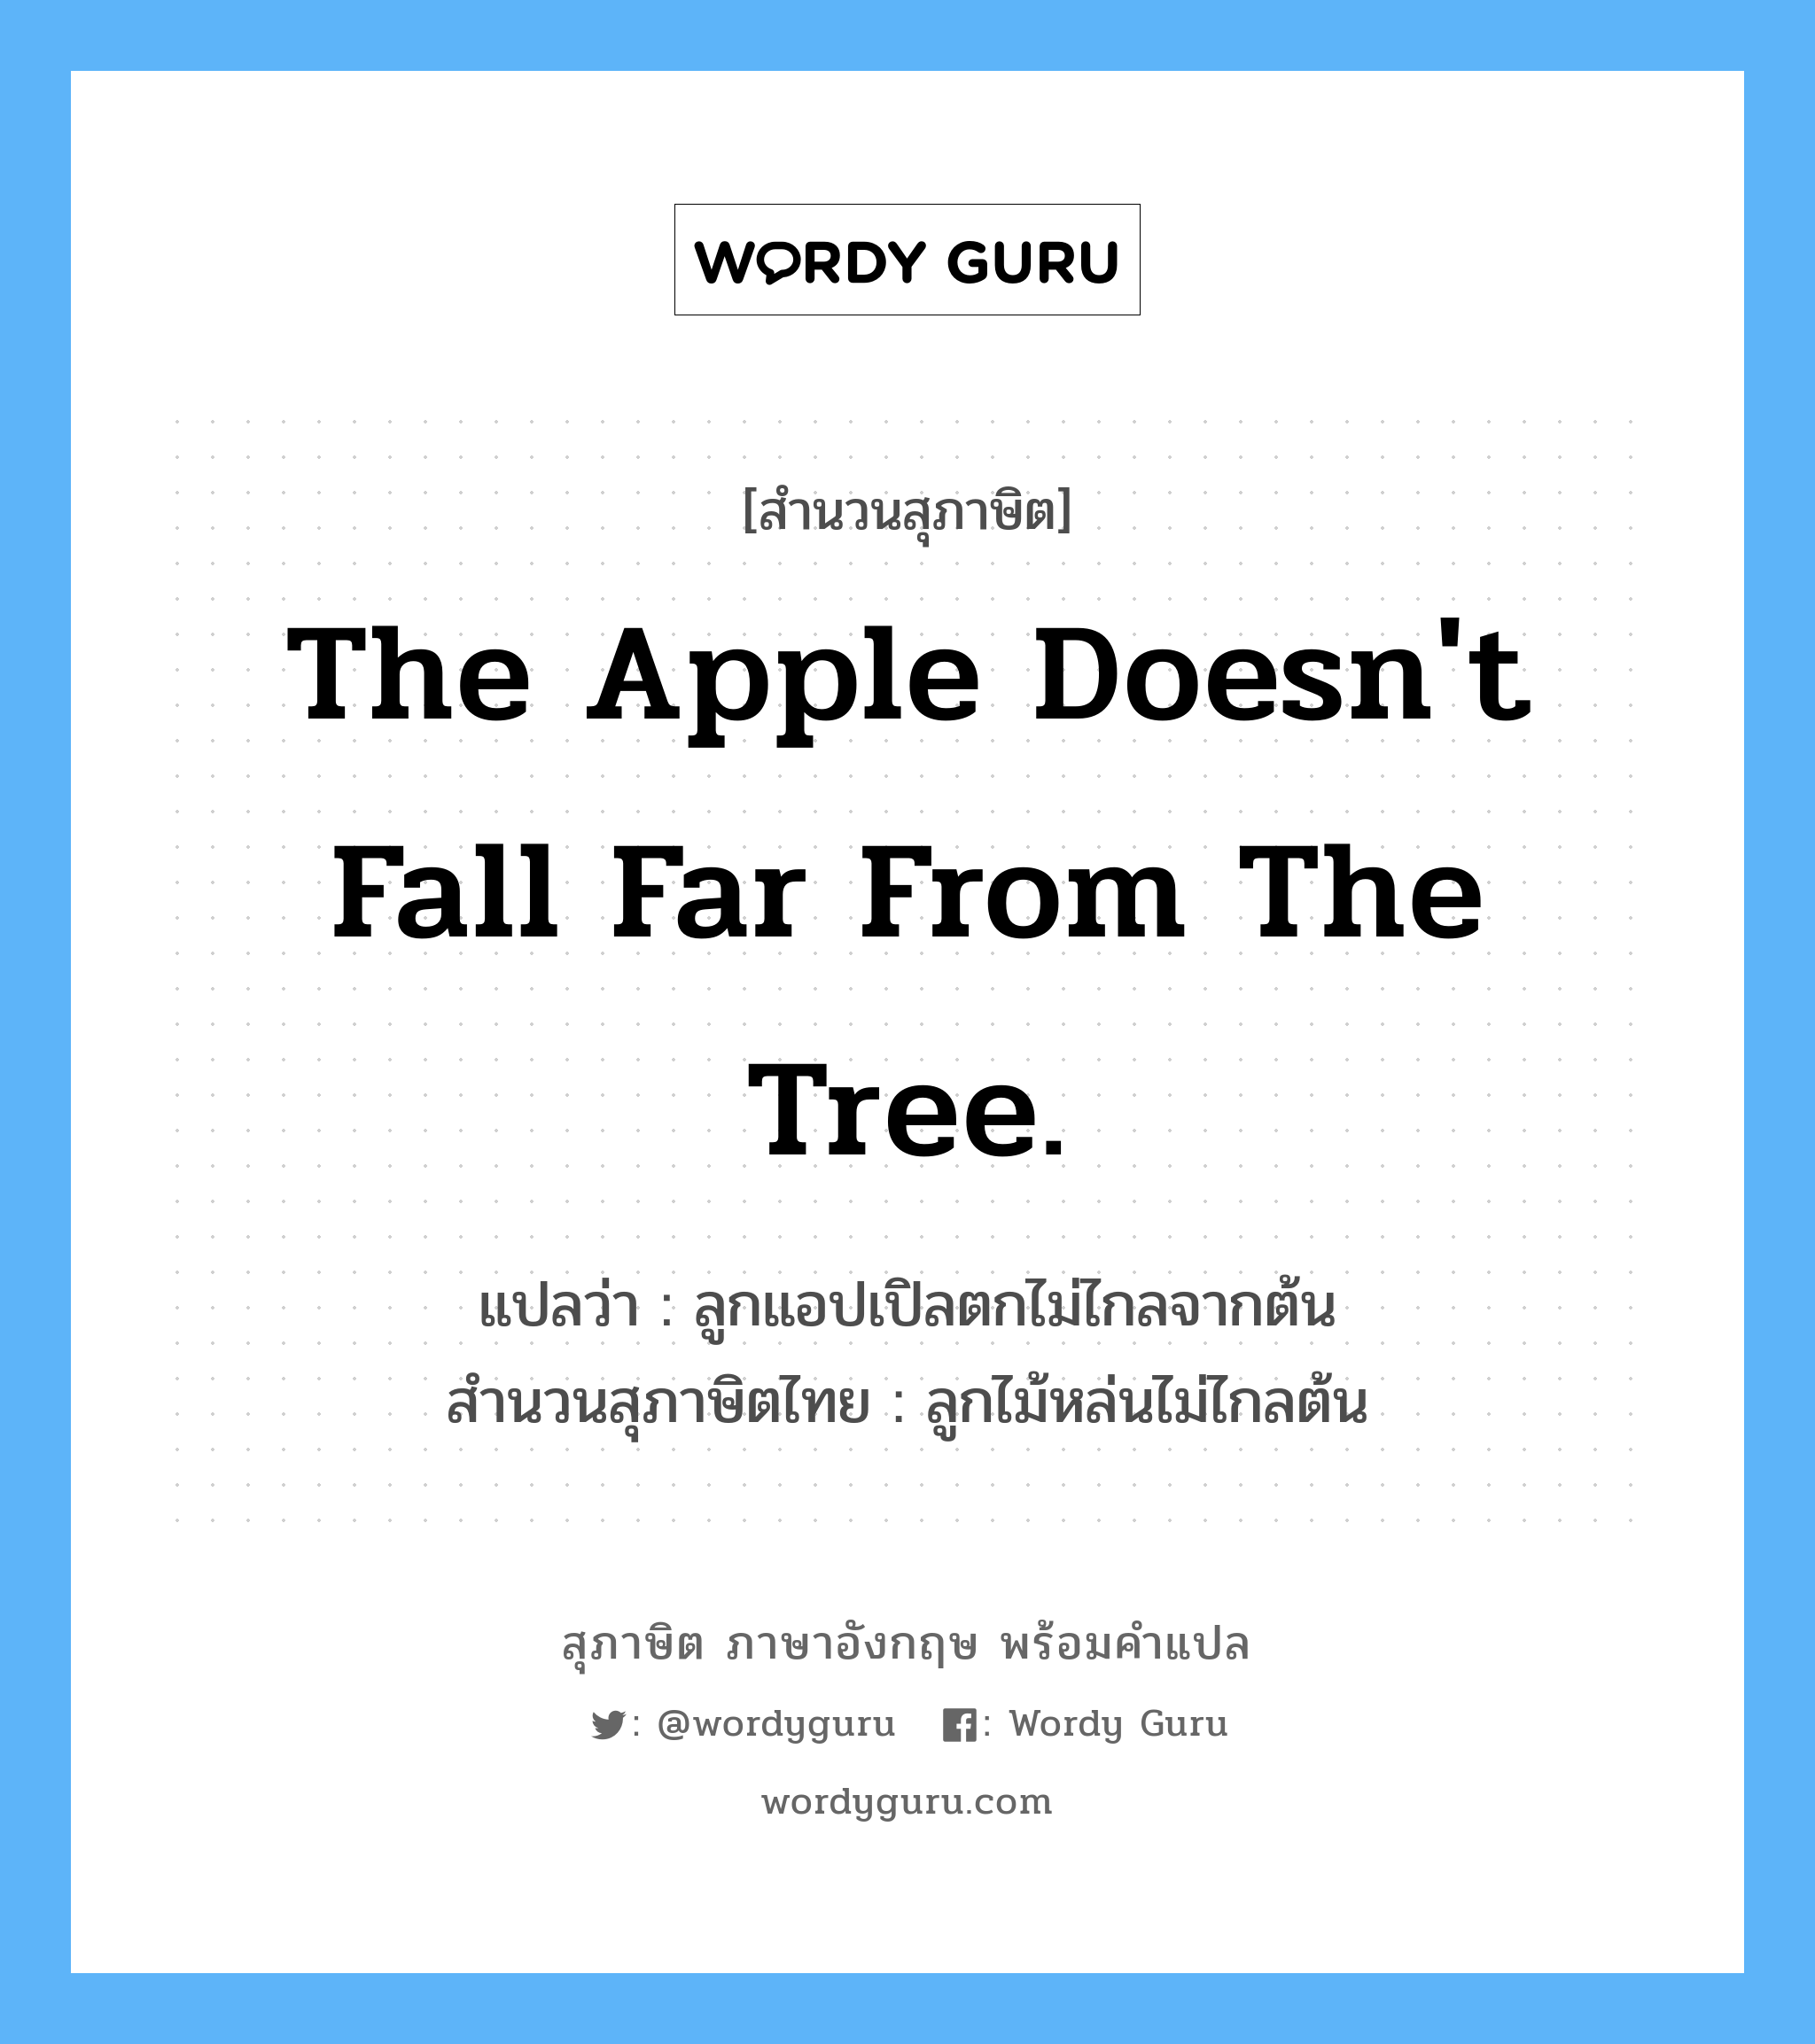 The apple doesn't fall far from the tree. แปลว่า?, สำนวนสุภาษิต ภาษาอังกฤษ The apple doesn't fall far from the tree. แปลว่า ลูกแอปเปิลตกไม่ไกลจากต้น สำนวนสุภาษิตไทย ลูกไม้หล่นไม่ไกลต้น